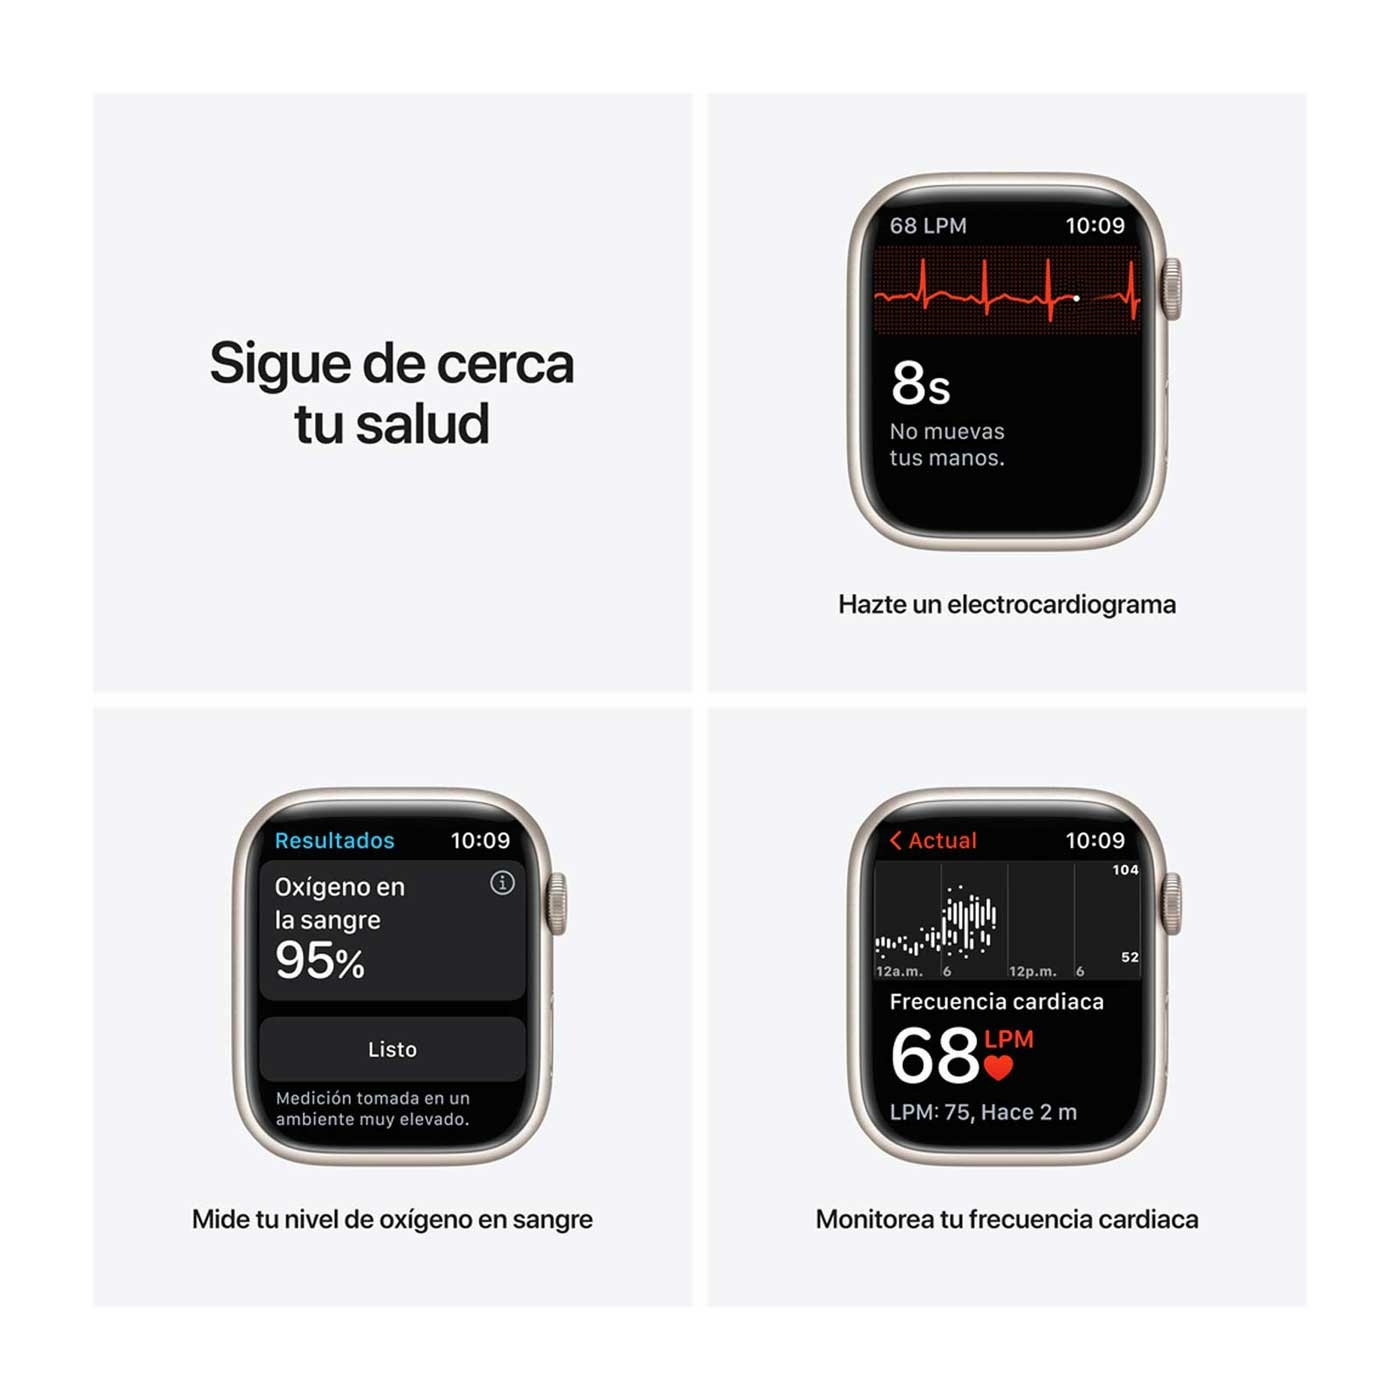 Apple Watch Series 7 de 45 mm Caja de Aluminio en Blanco Estelar, Correa Deportiva Blanco Estelar